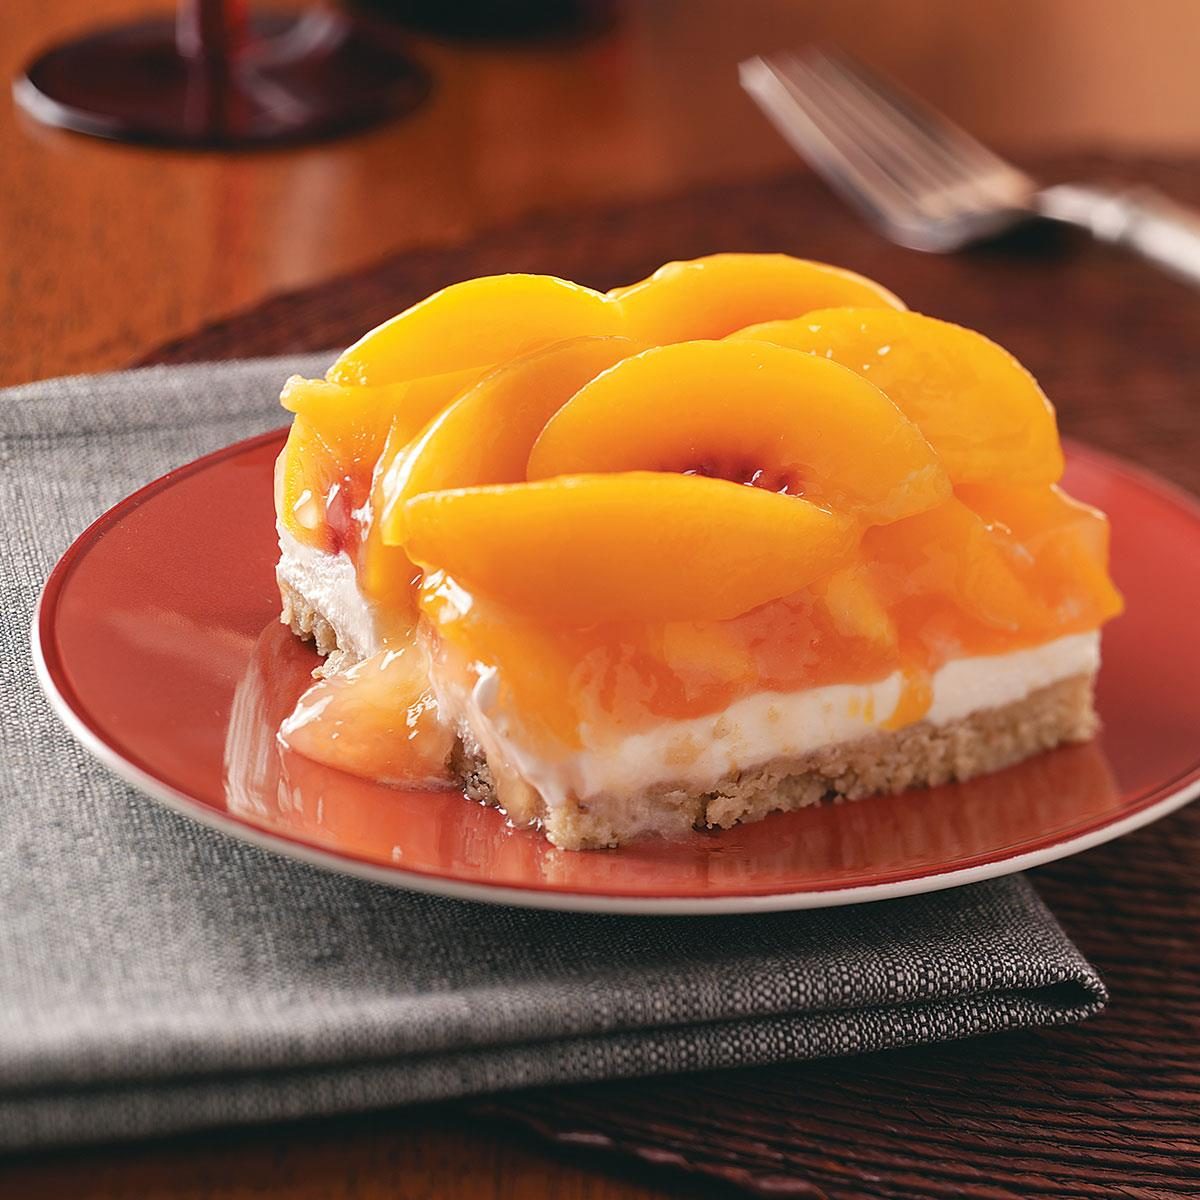 Peaches & Cream Dessert Recipe: How to Make It